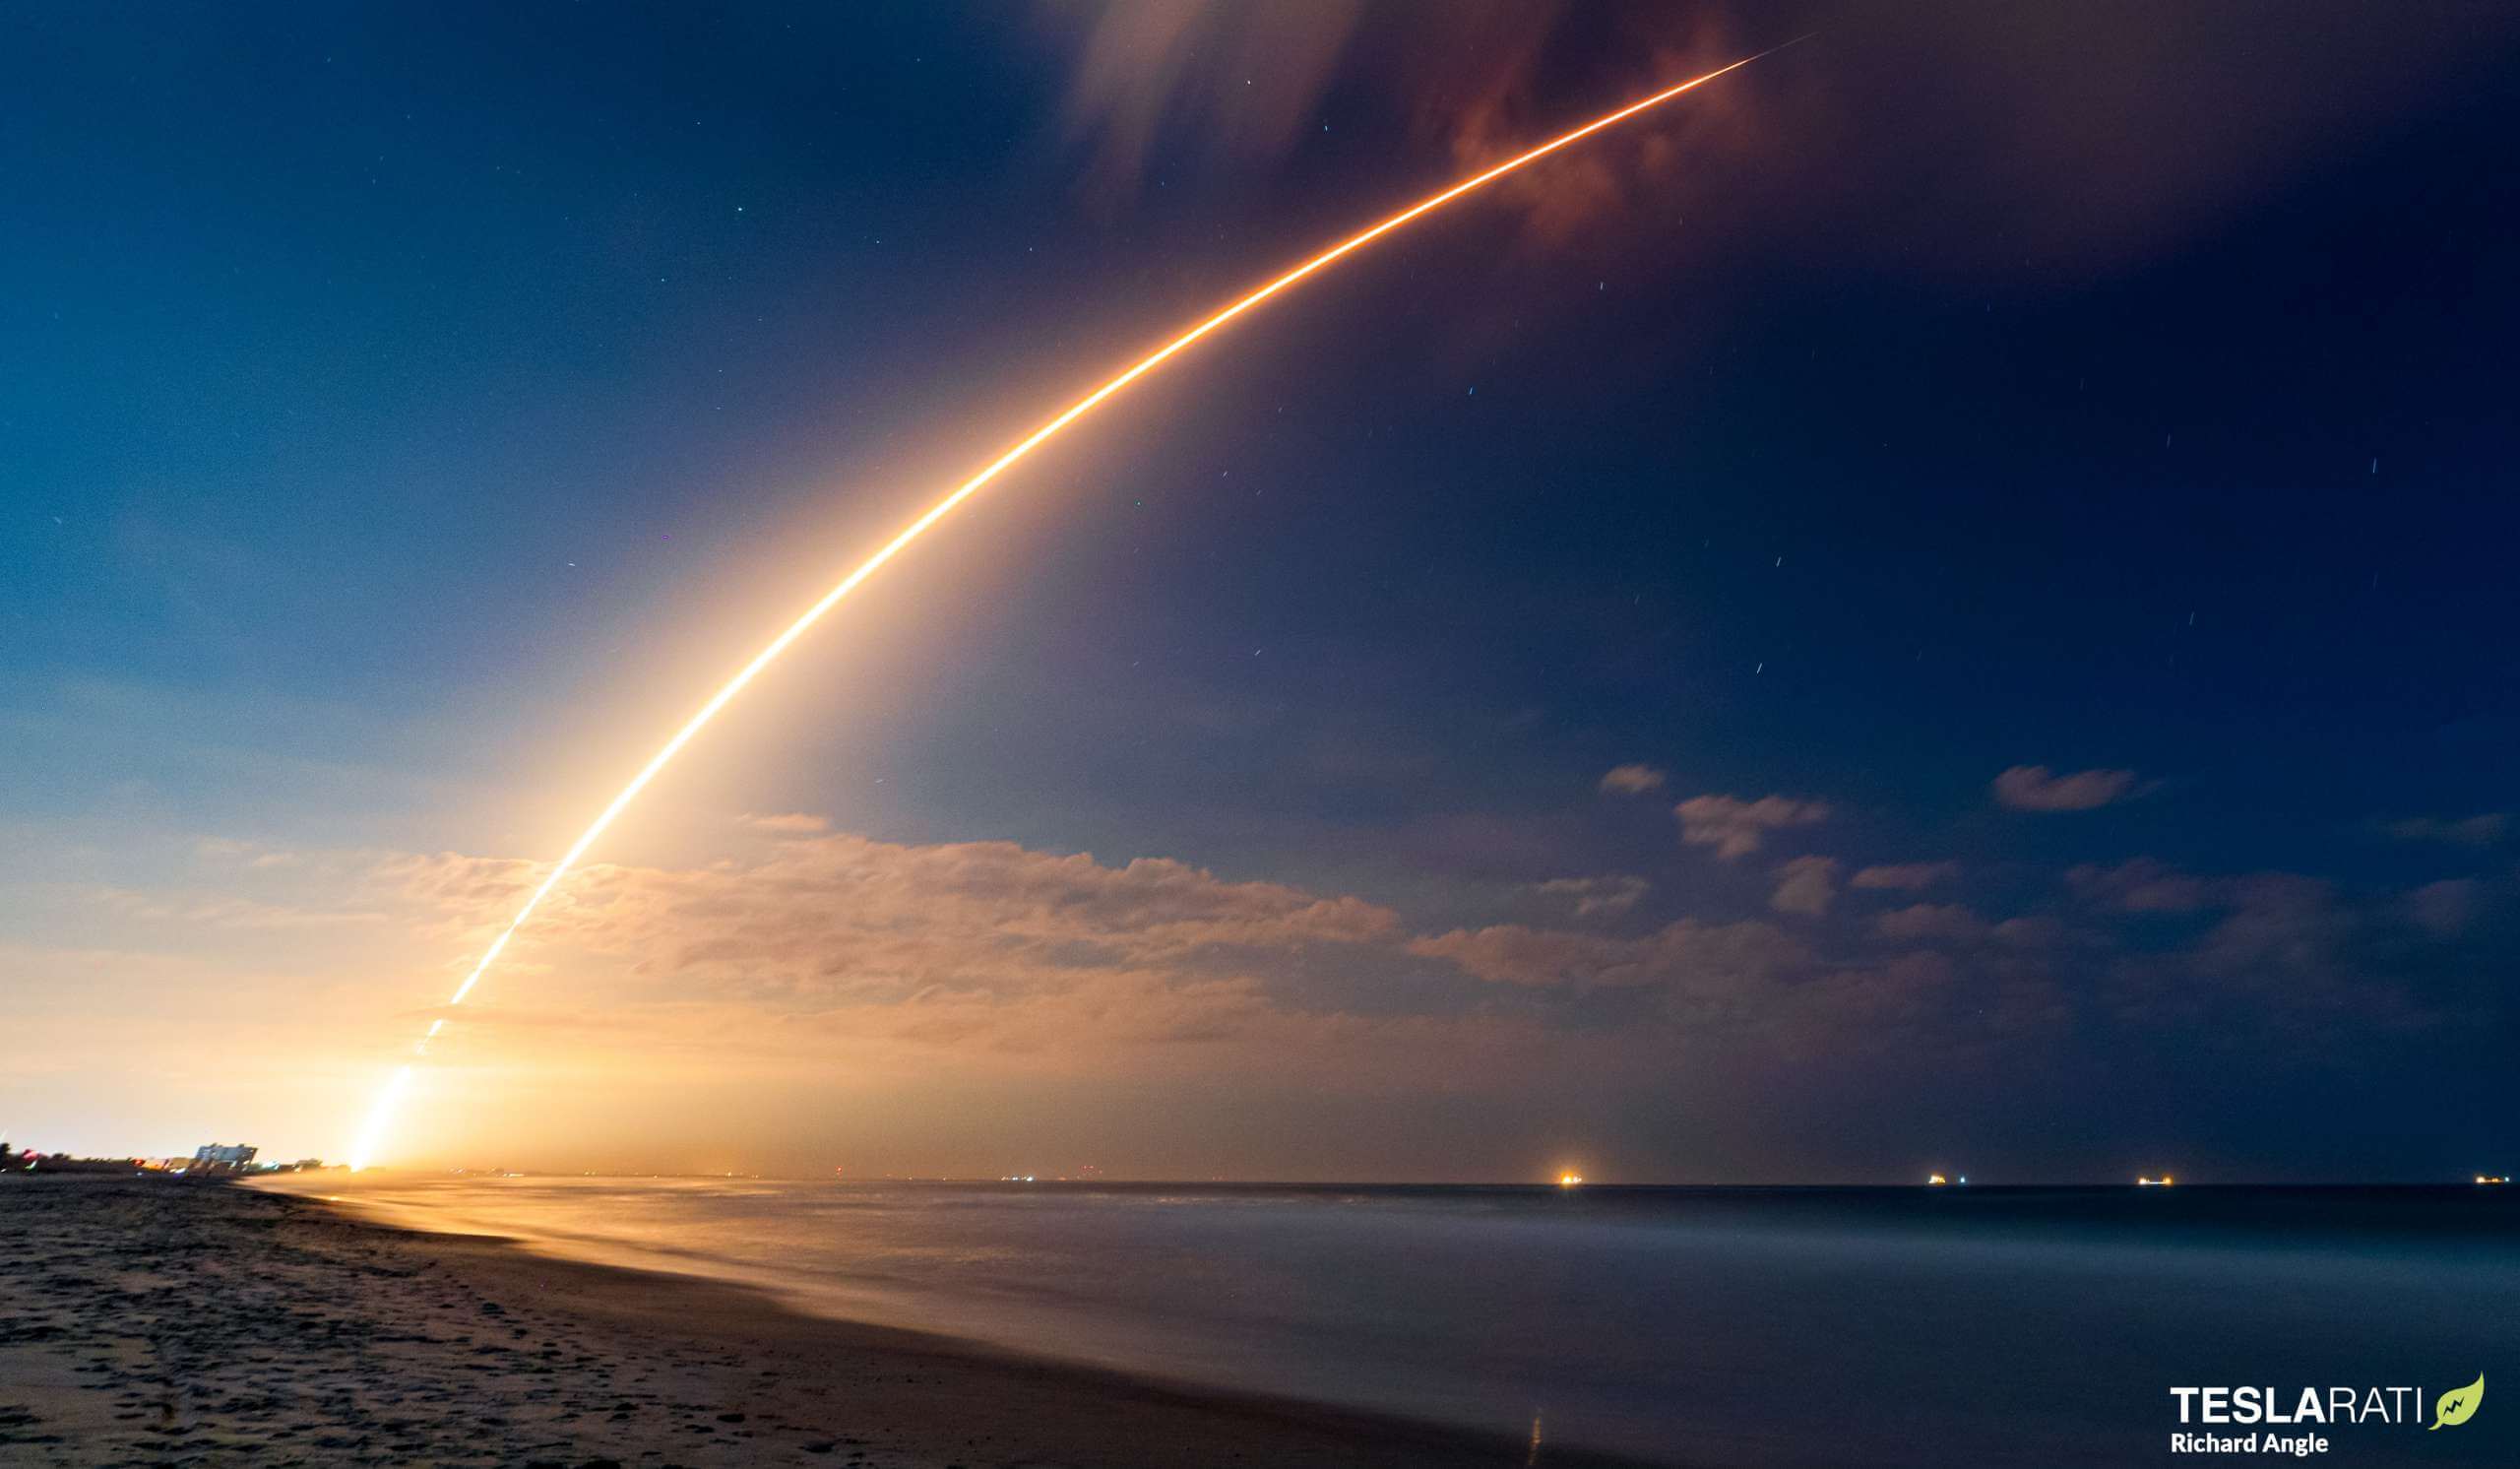 स्पेसएक्स स्टारलिंक जेन2 मिशन ने फाल्कन 9 रॉकेट के 200वें सफल लॉन्च को चिन्हित किया